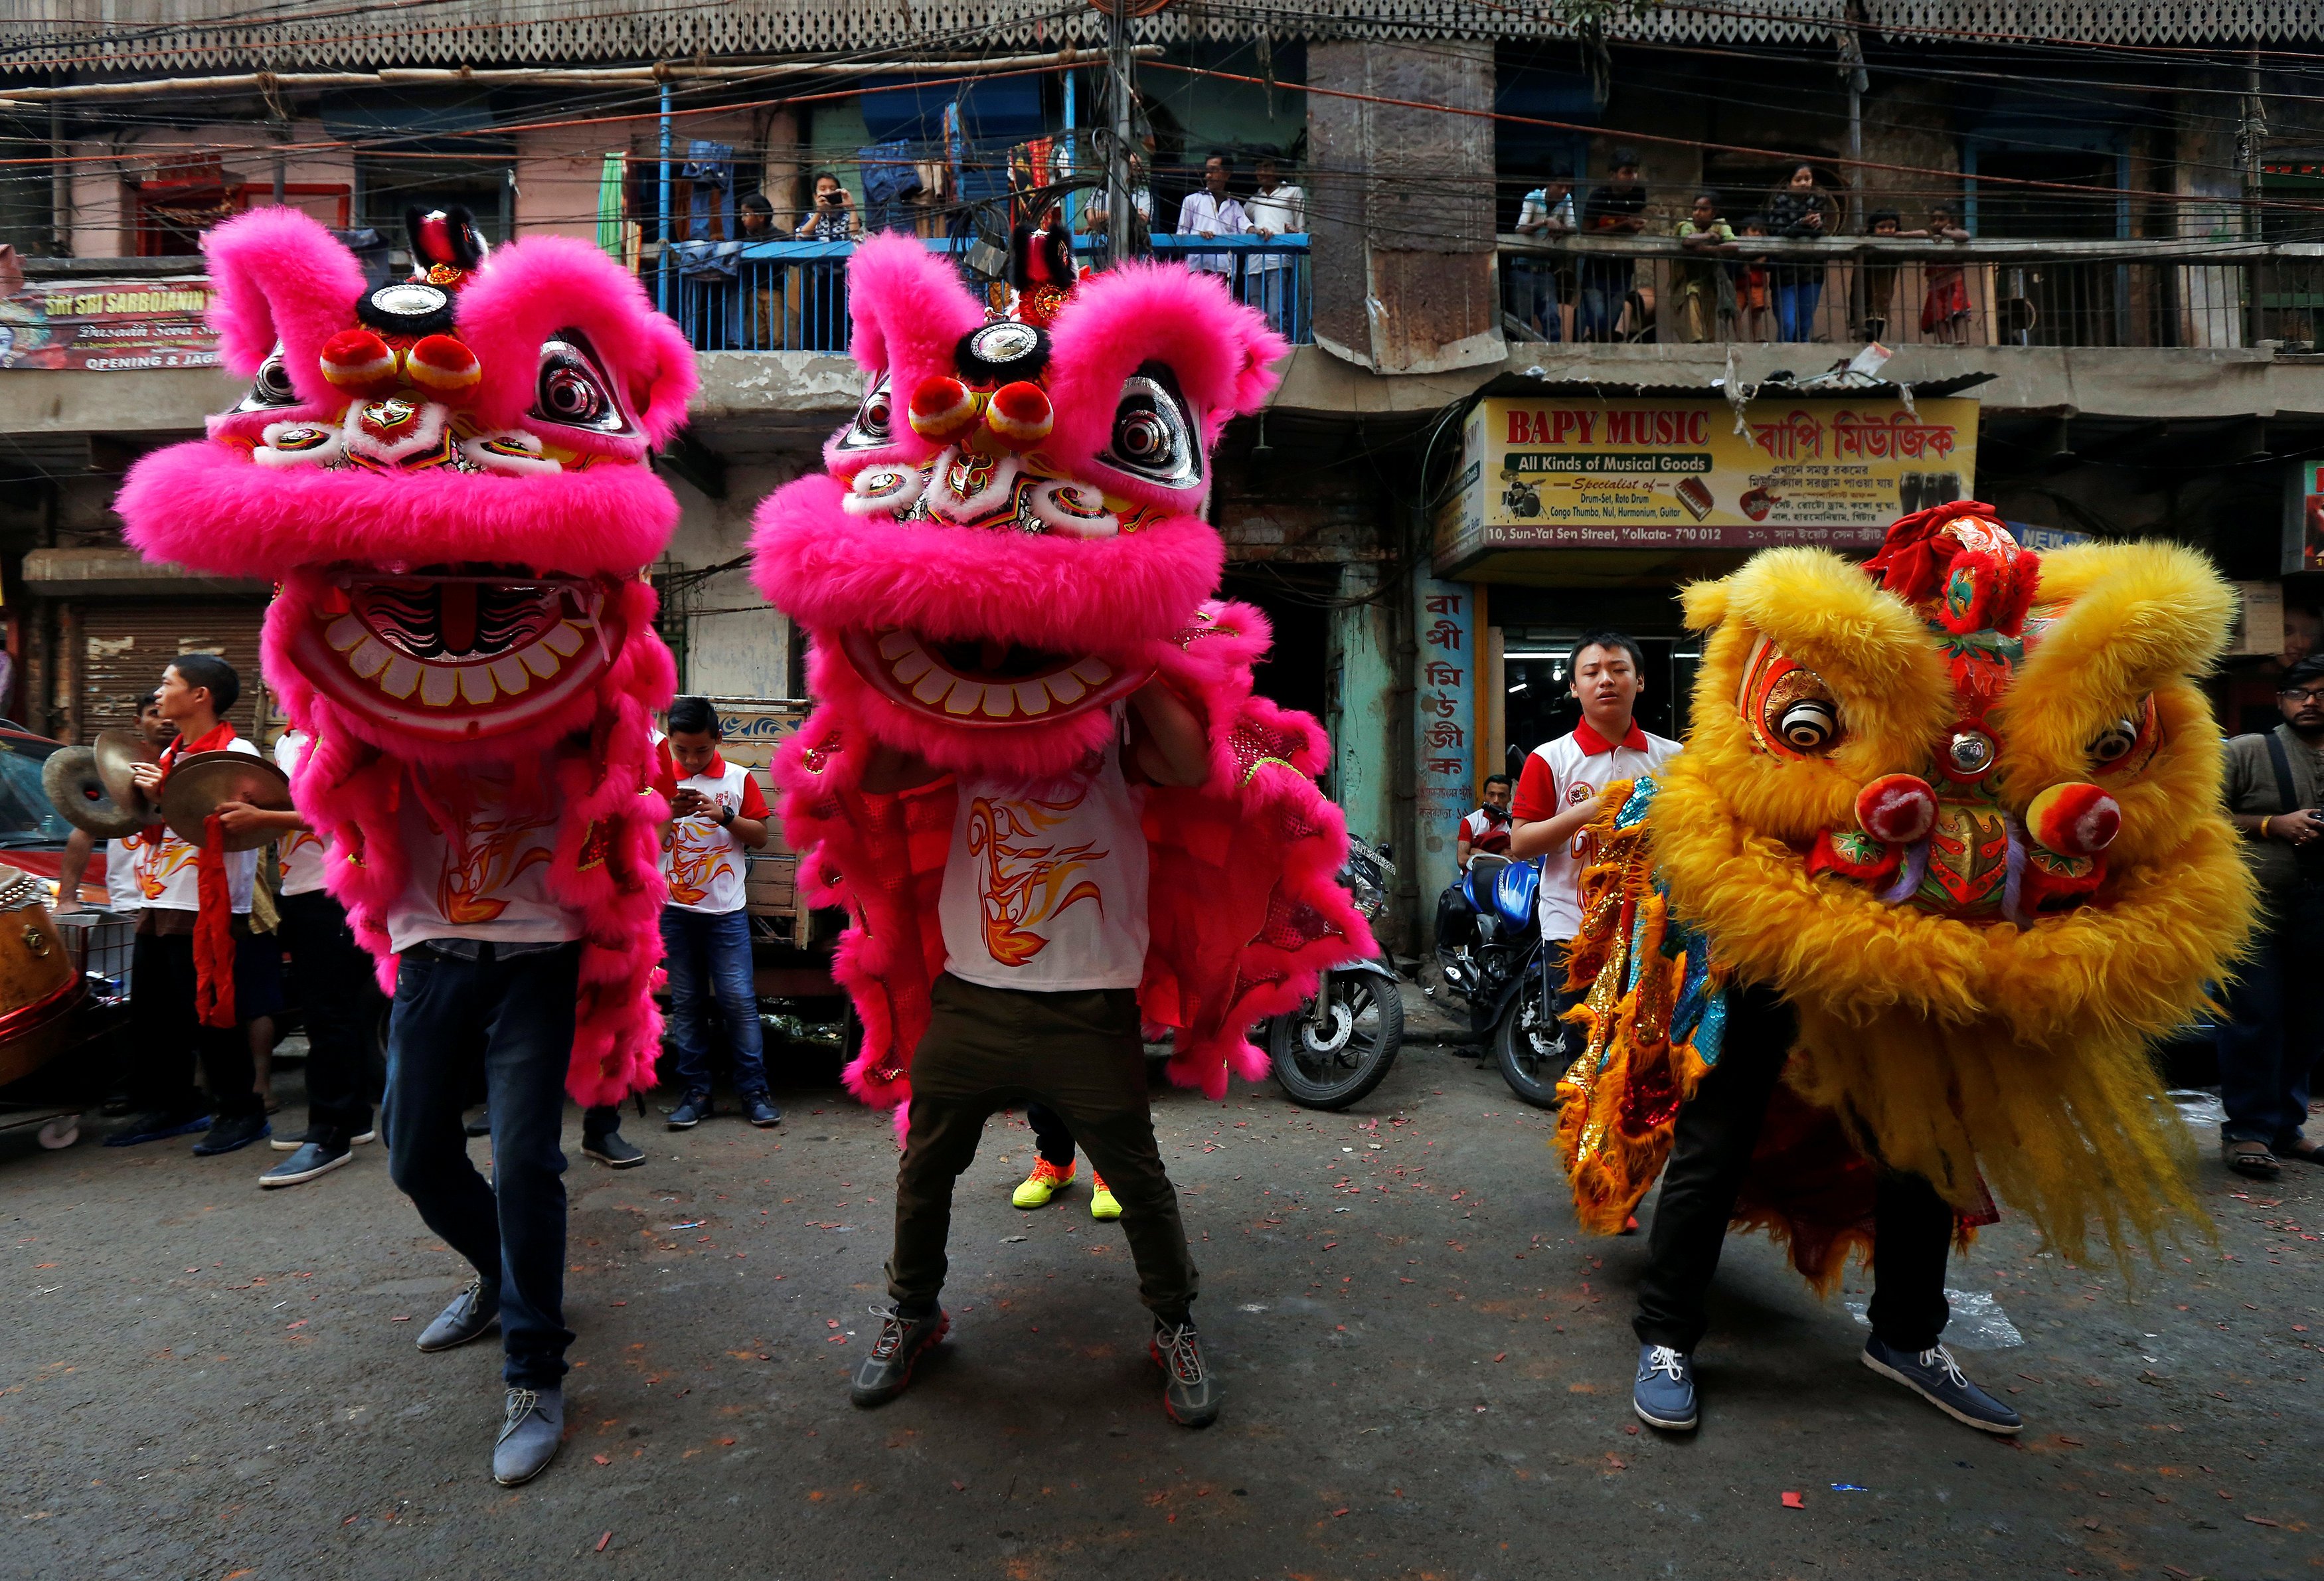 شباب يرقصون بأقنعة التنين فى شوارع الهند احتفالًا بالسنة القمرية الجديدة